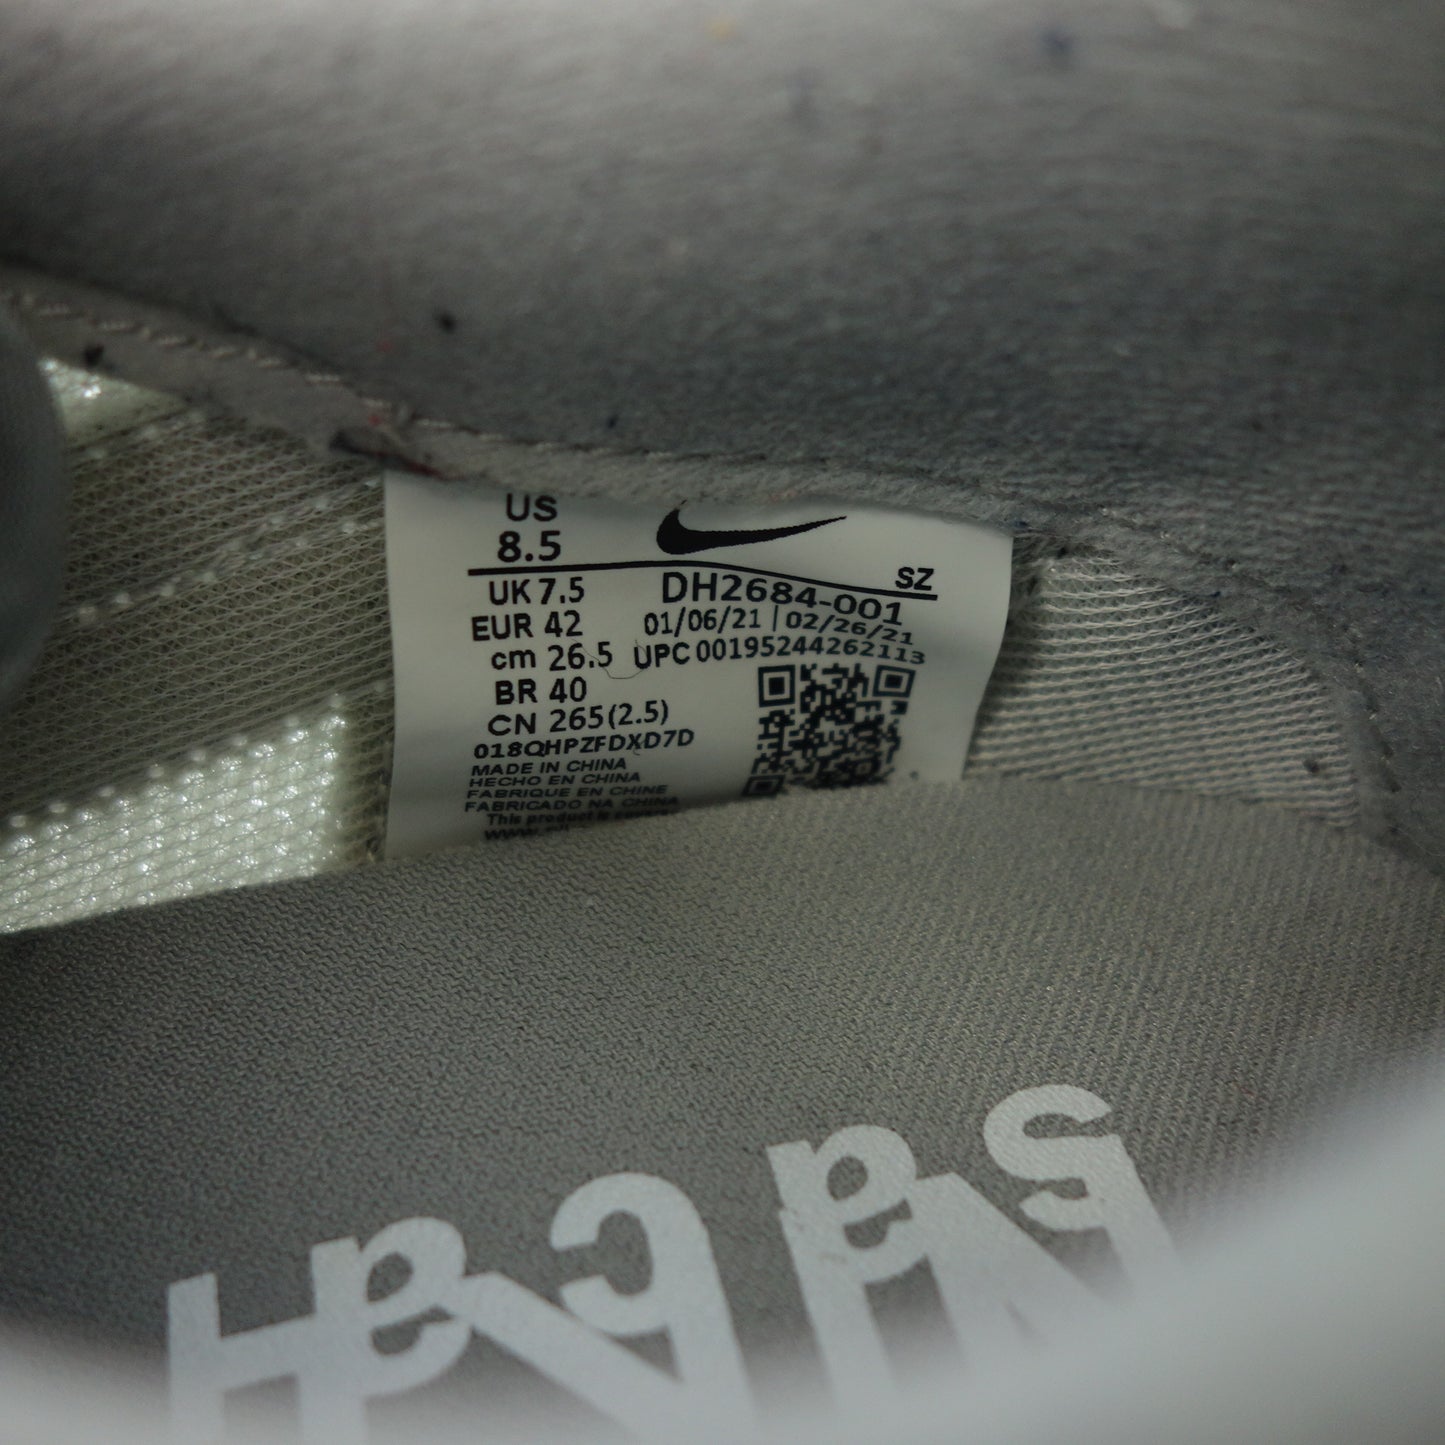 極美品◆ナイキ サカイ スニーカー DH2684-001 LD ワッフル メンズ グレー系 サイズ26.5cm NIKE Sacai【AFD8】